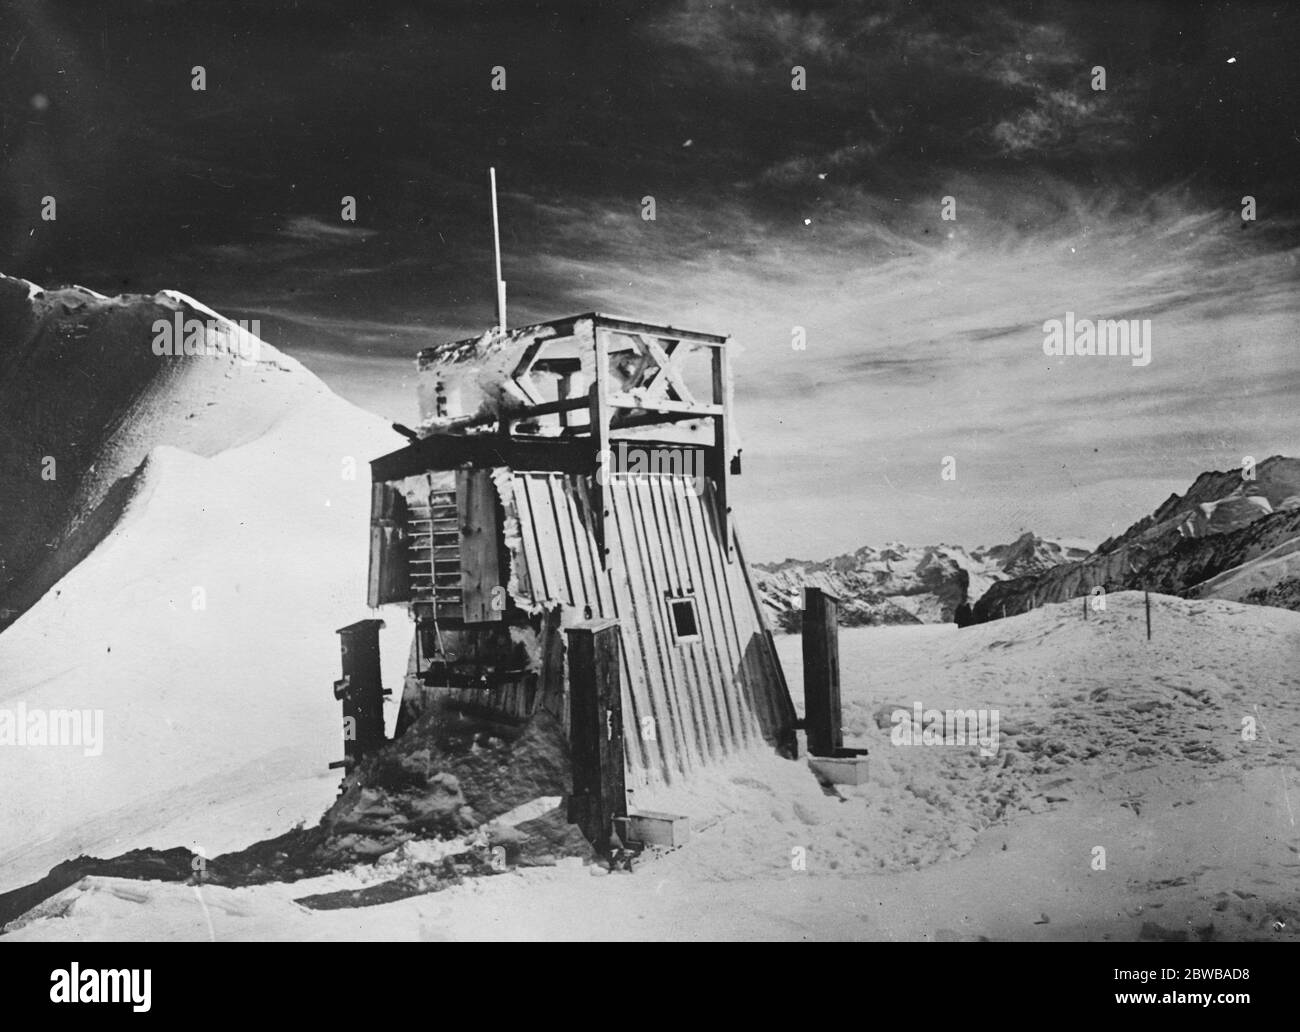 Planté sur la glace éternelle . Nouvel observatoire météorologique sur le Jung Frau . Un observatoire météorologique vient d'être érigé par un institut météorologique suisse , sur la crête Jungfrau 3 , à 200 pieds au-dessus du niveau de la mer . L'observatoire se trouve sur la glace éternelle . 10 octobre 1925 Banque D'Images